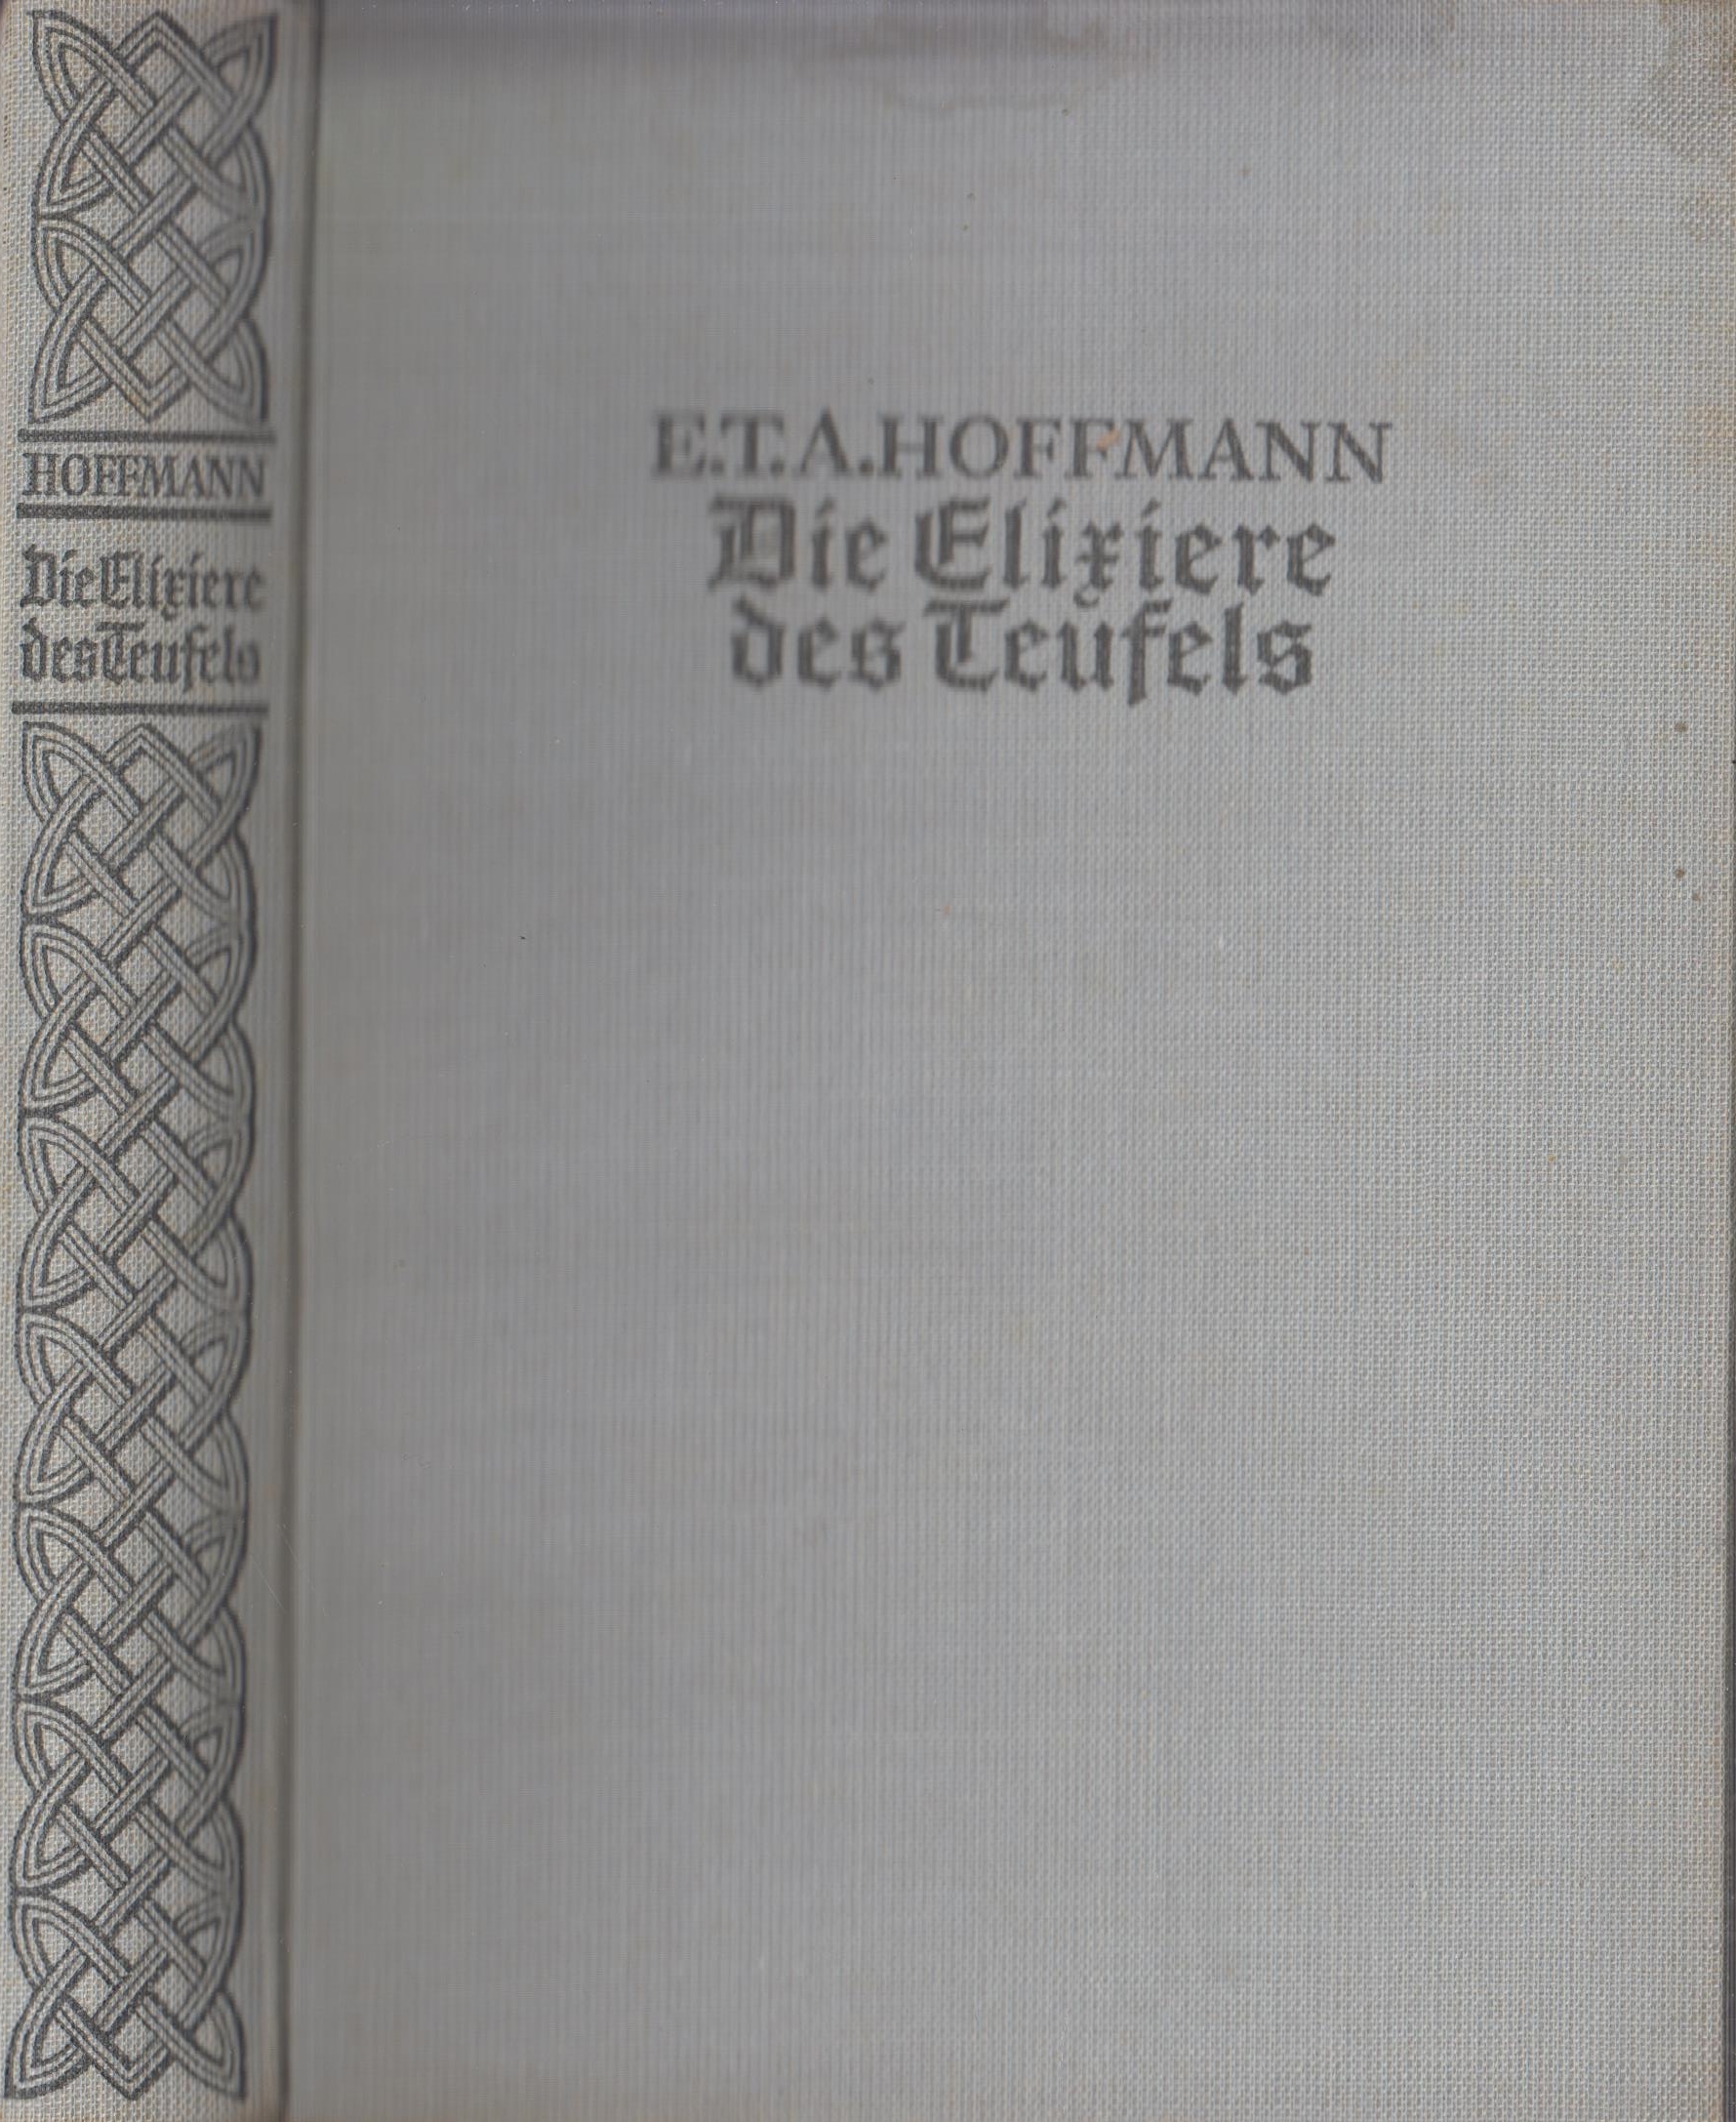 Die Elixiere des Teufels - Hoffmann, E. T. A.